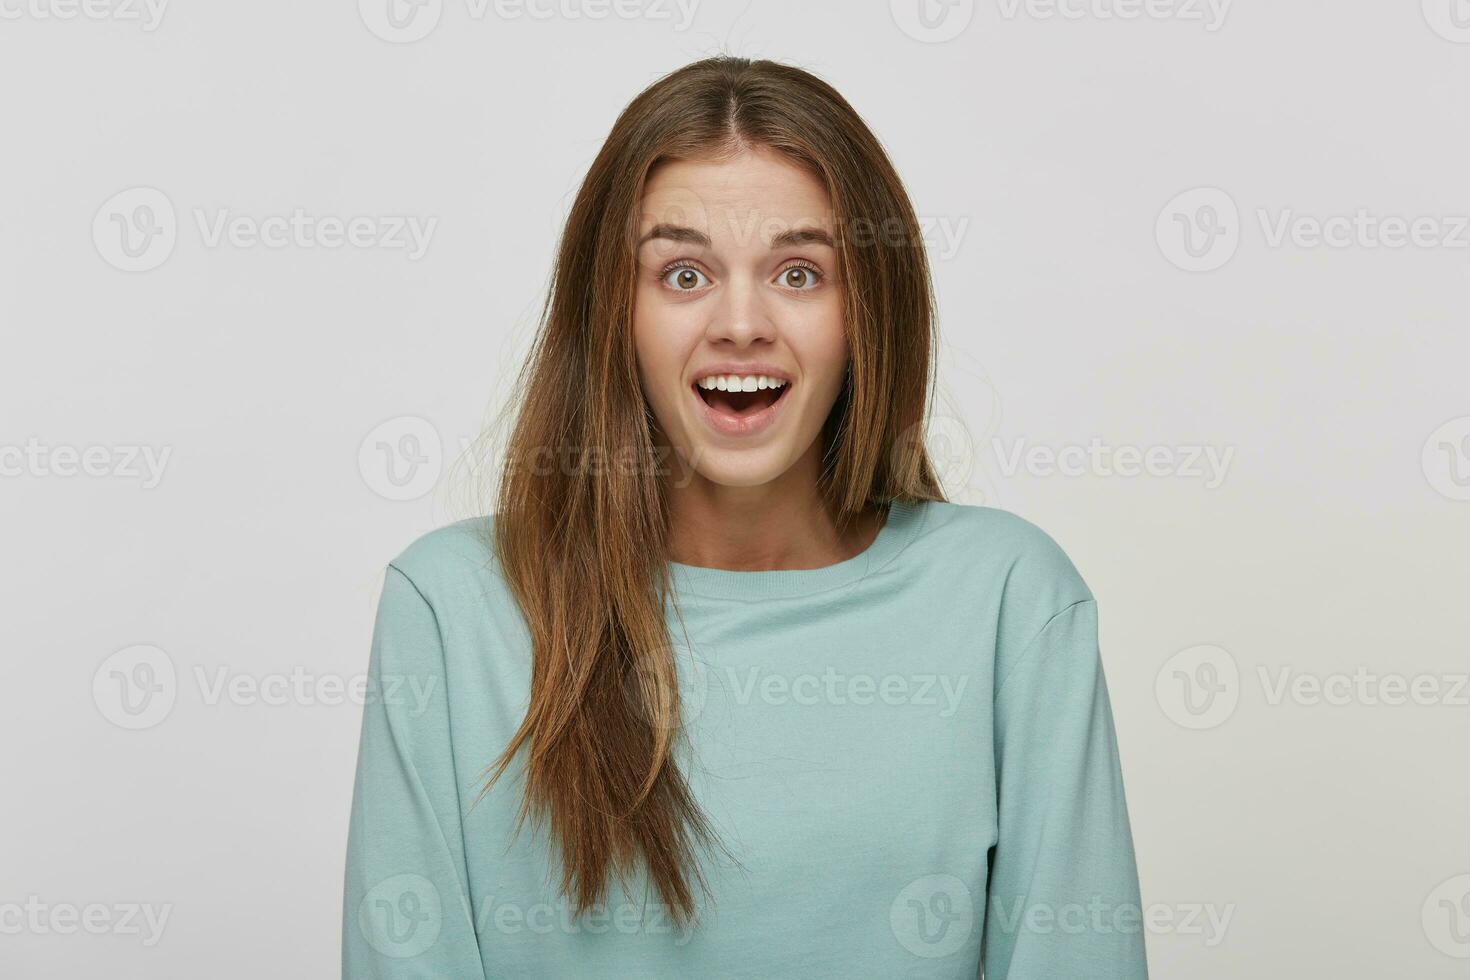 överraskad glad skön kvinna med förvånad uttryck, utseende med bugged ögon och håller mun öppna, klädd tillfällig blå lång ärm t-shirt, över vit bakgrund. mänsklig reaktion och känslor foto